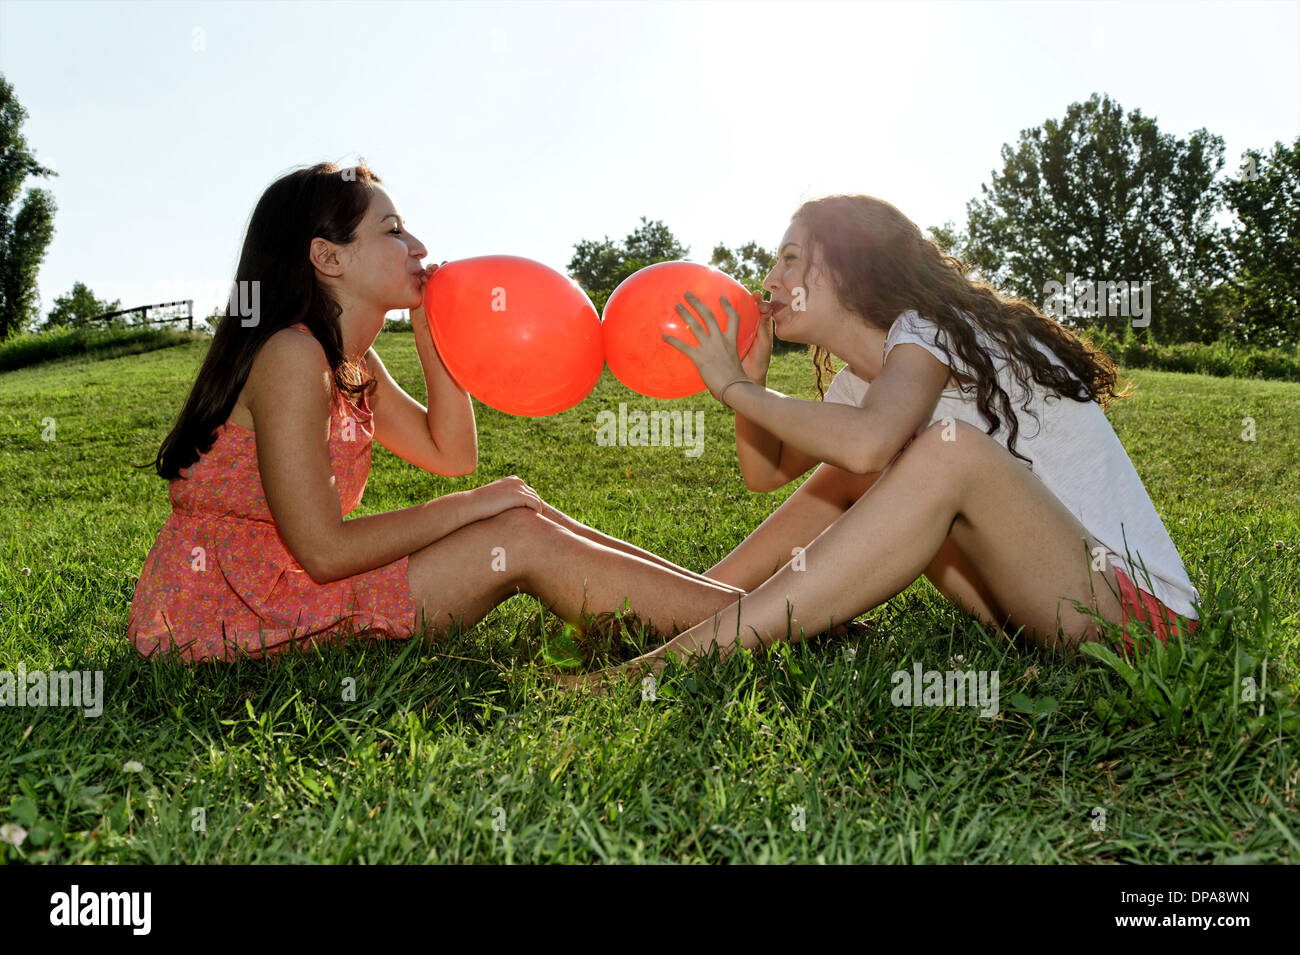 Deux jeunes femmes assises sur l'herbe s'inclinant vers le haut des ballons rouges Banque D'Images